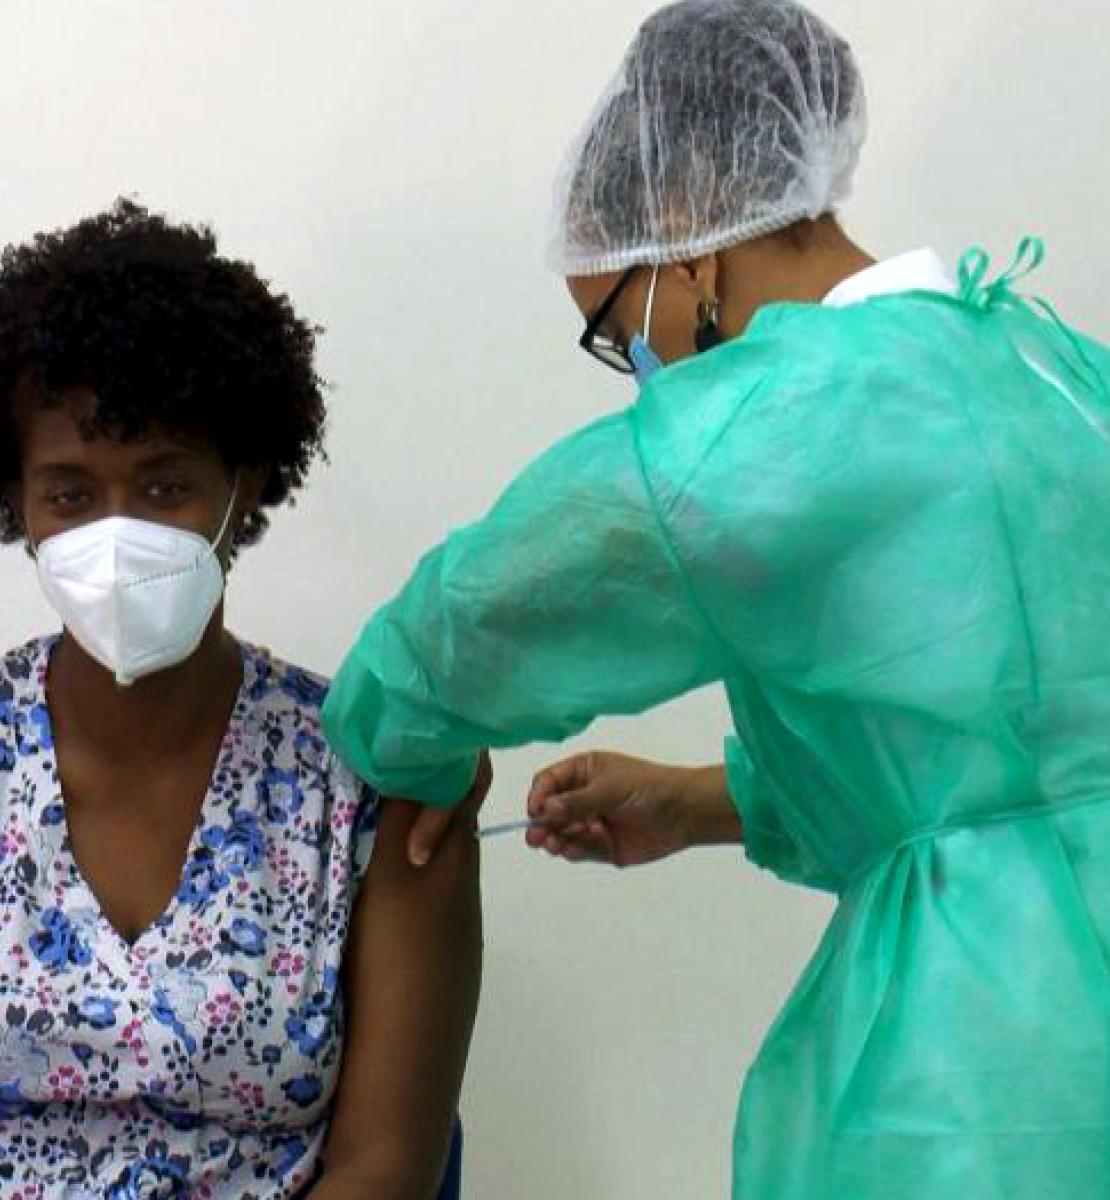 Ana Manuela, una técnica de salud, se sienta con tranquilidad, mientras recibe la vacuna contra la COVID-19.